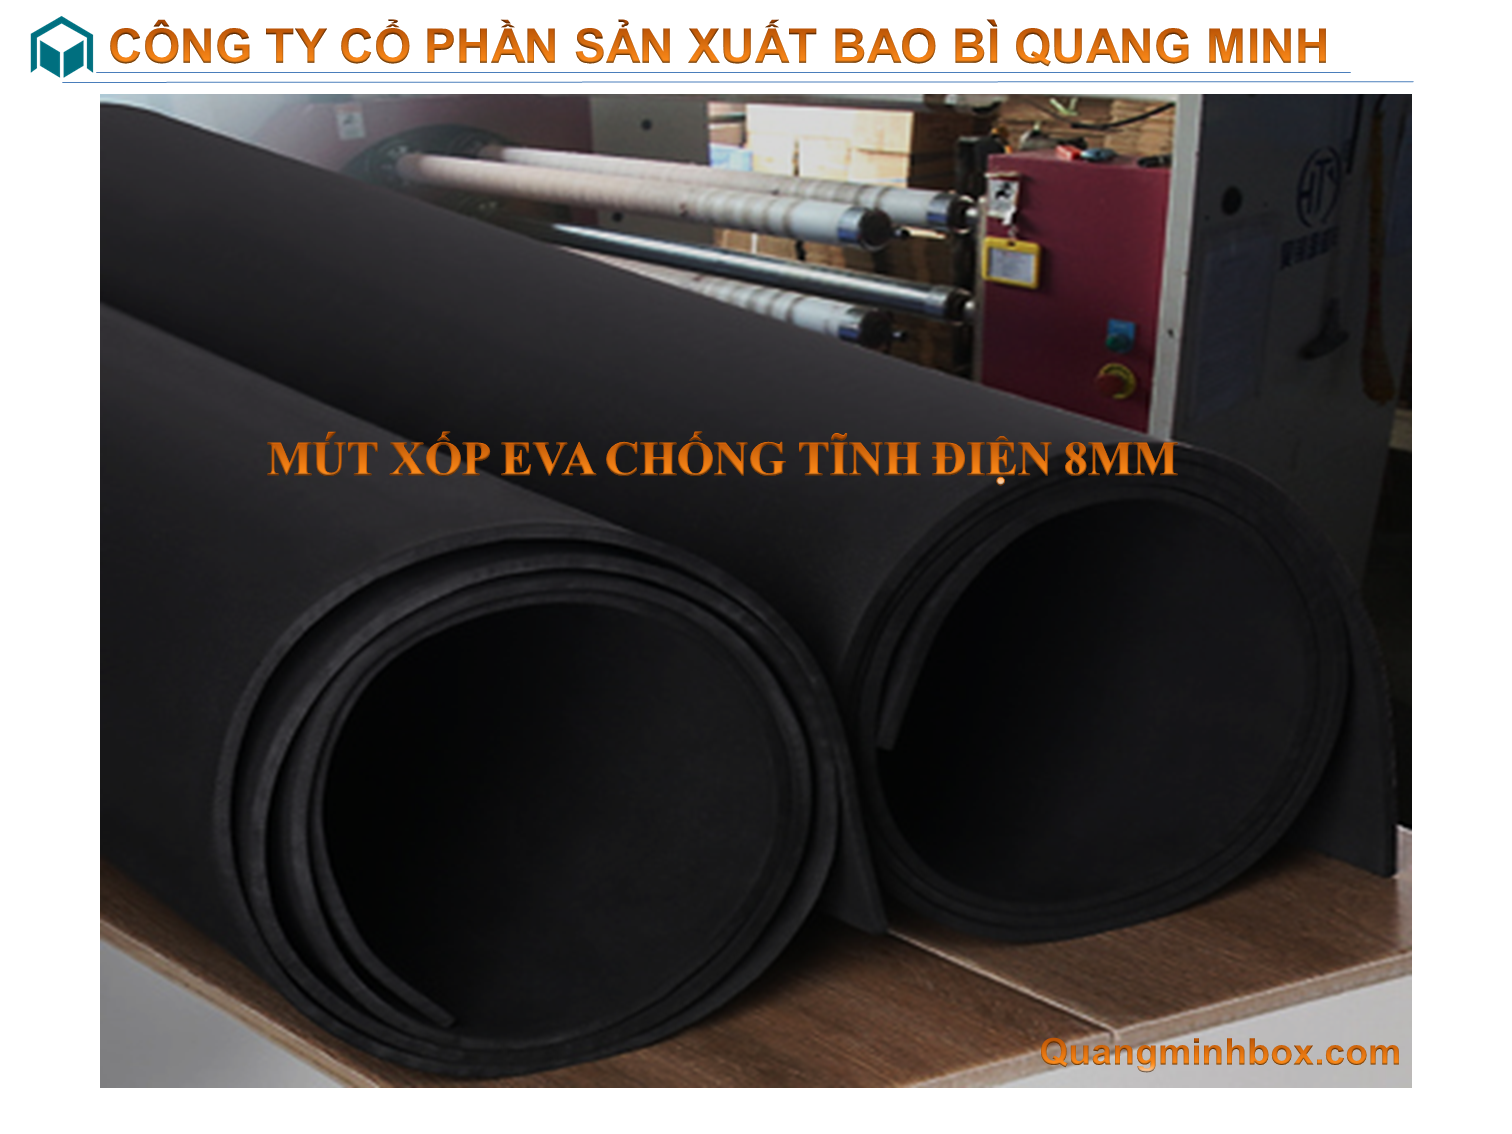 mut-xop-eva-chong-tinh-dien-8mm